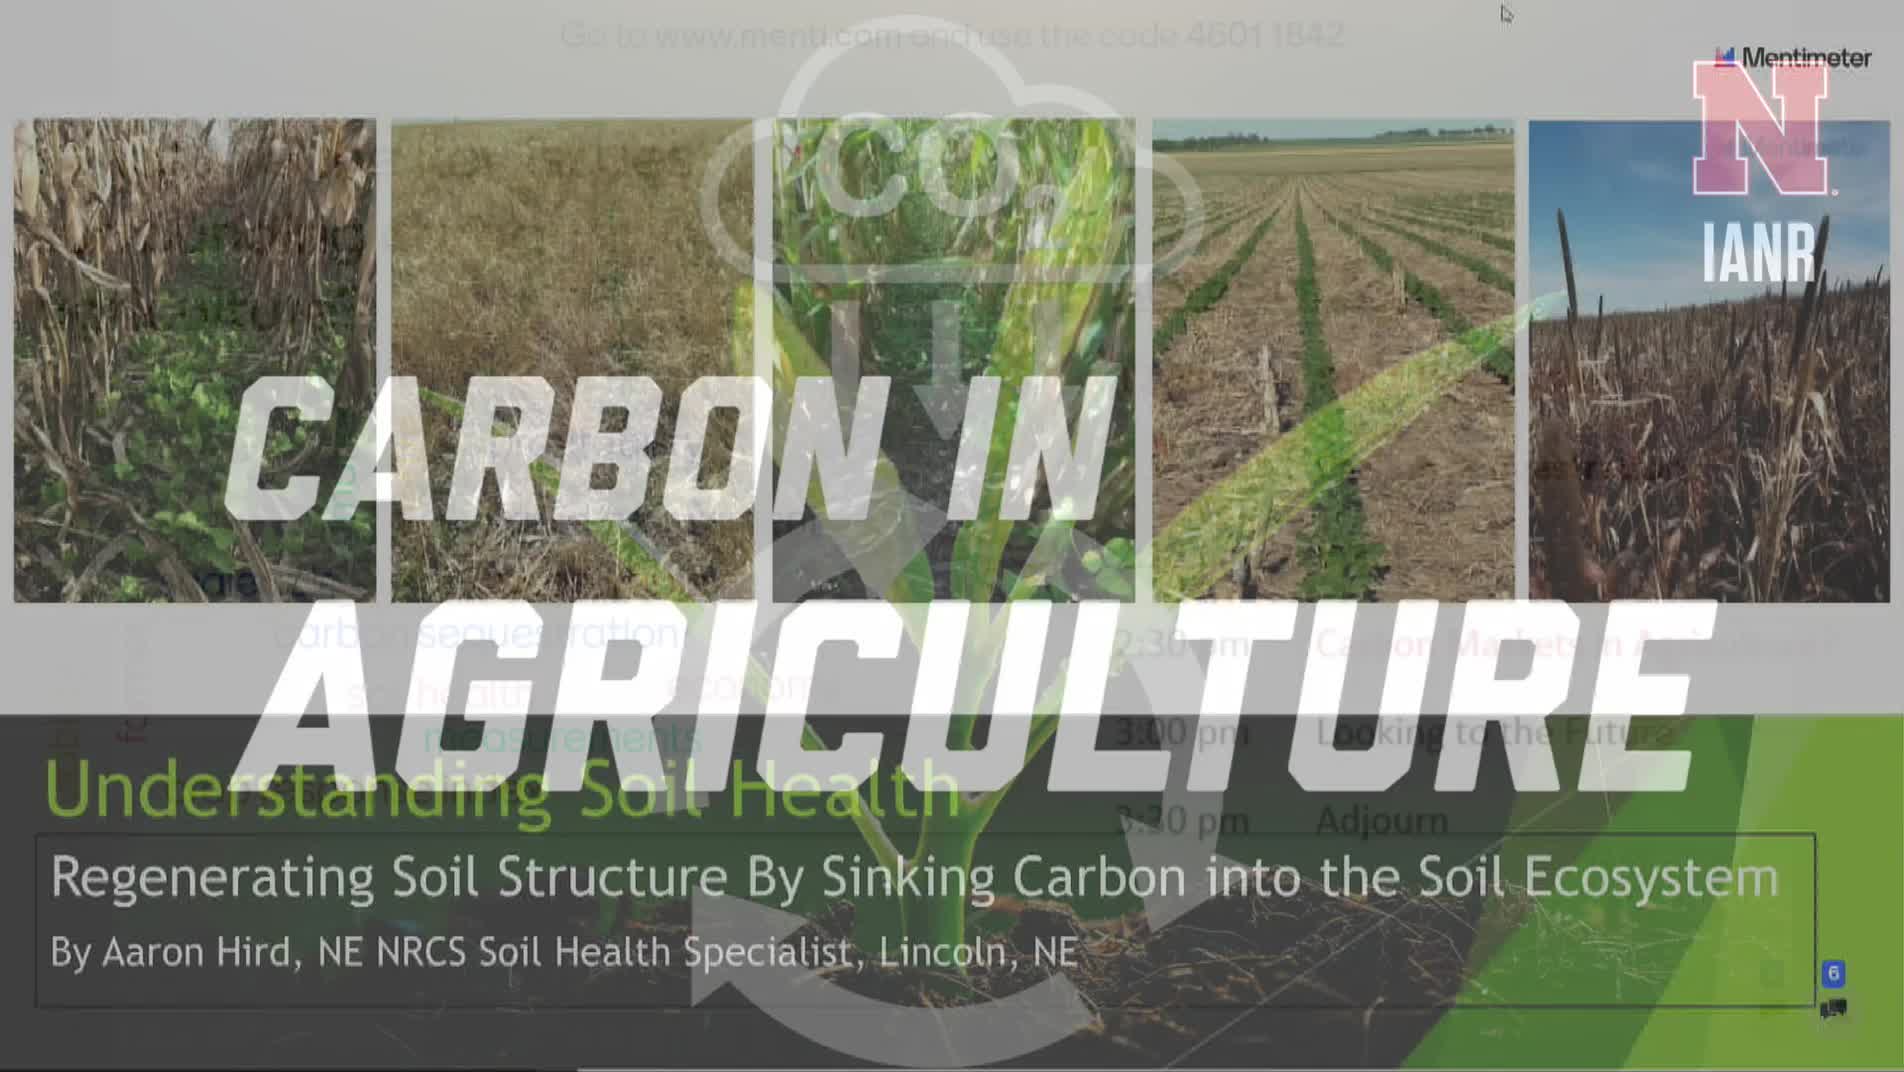 IANR Carbon Summit: Aaron Hird